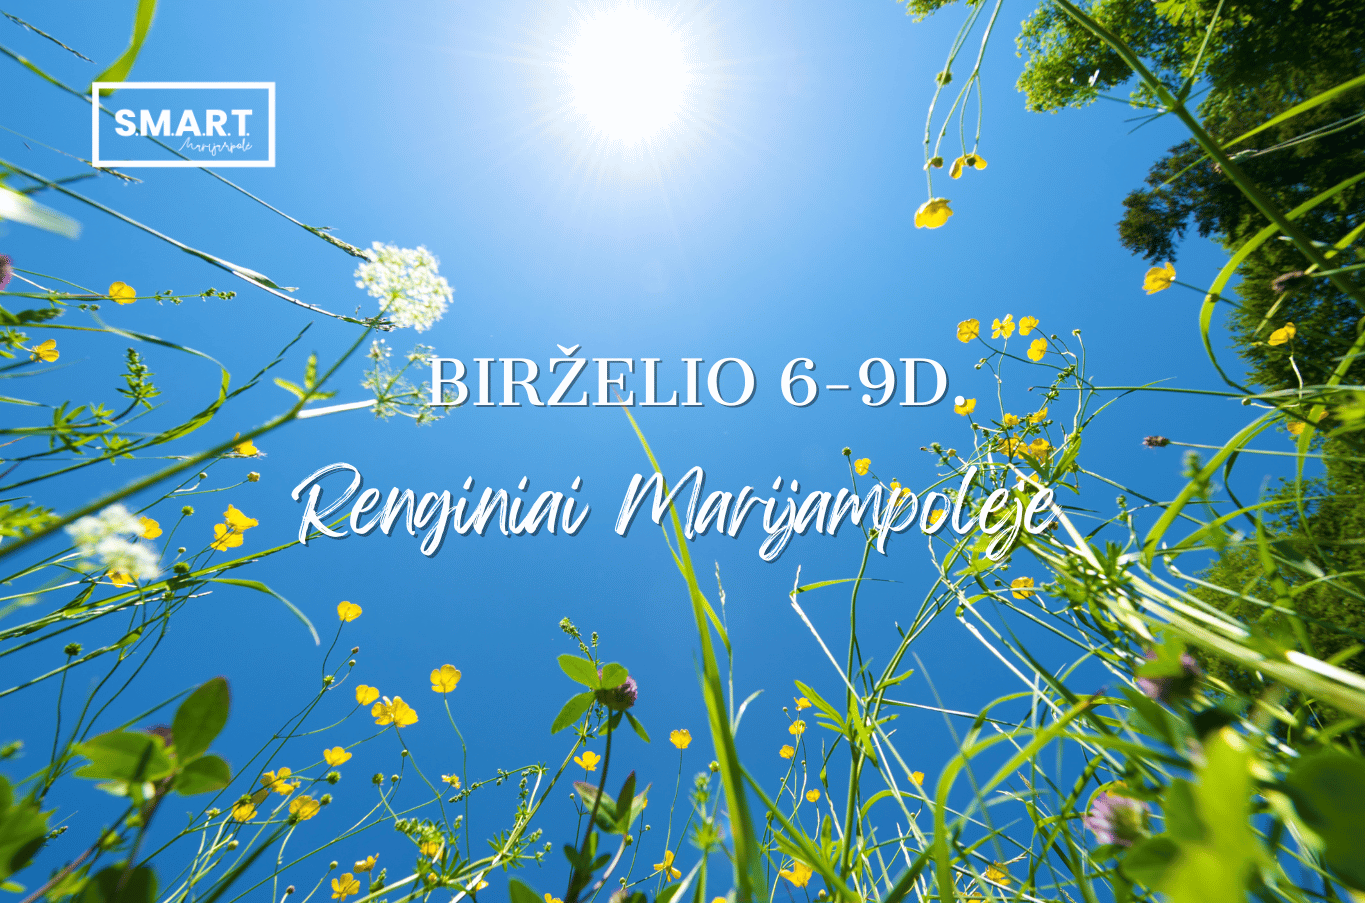 You are currently viewing Savaitgalio renginiai Marijampolėje | 06.06-06.09